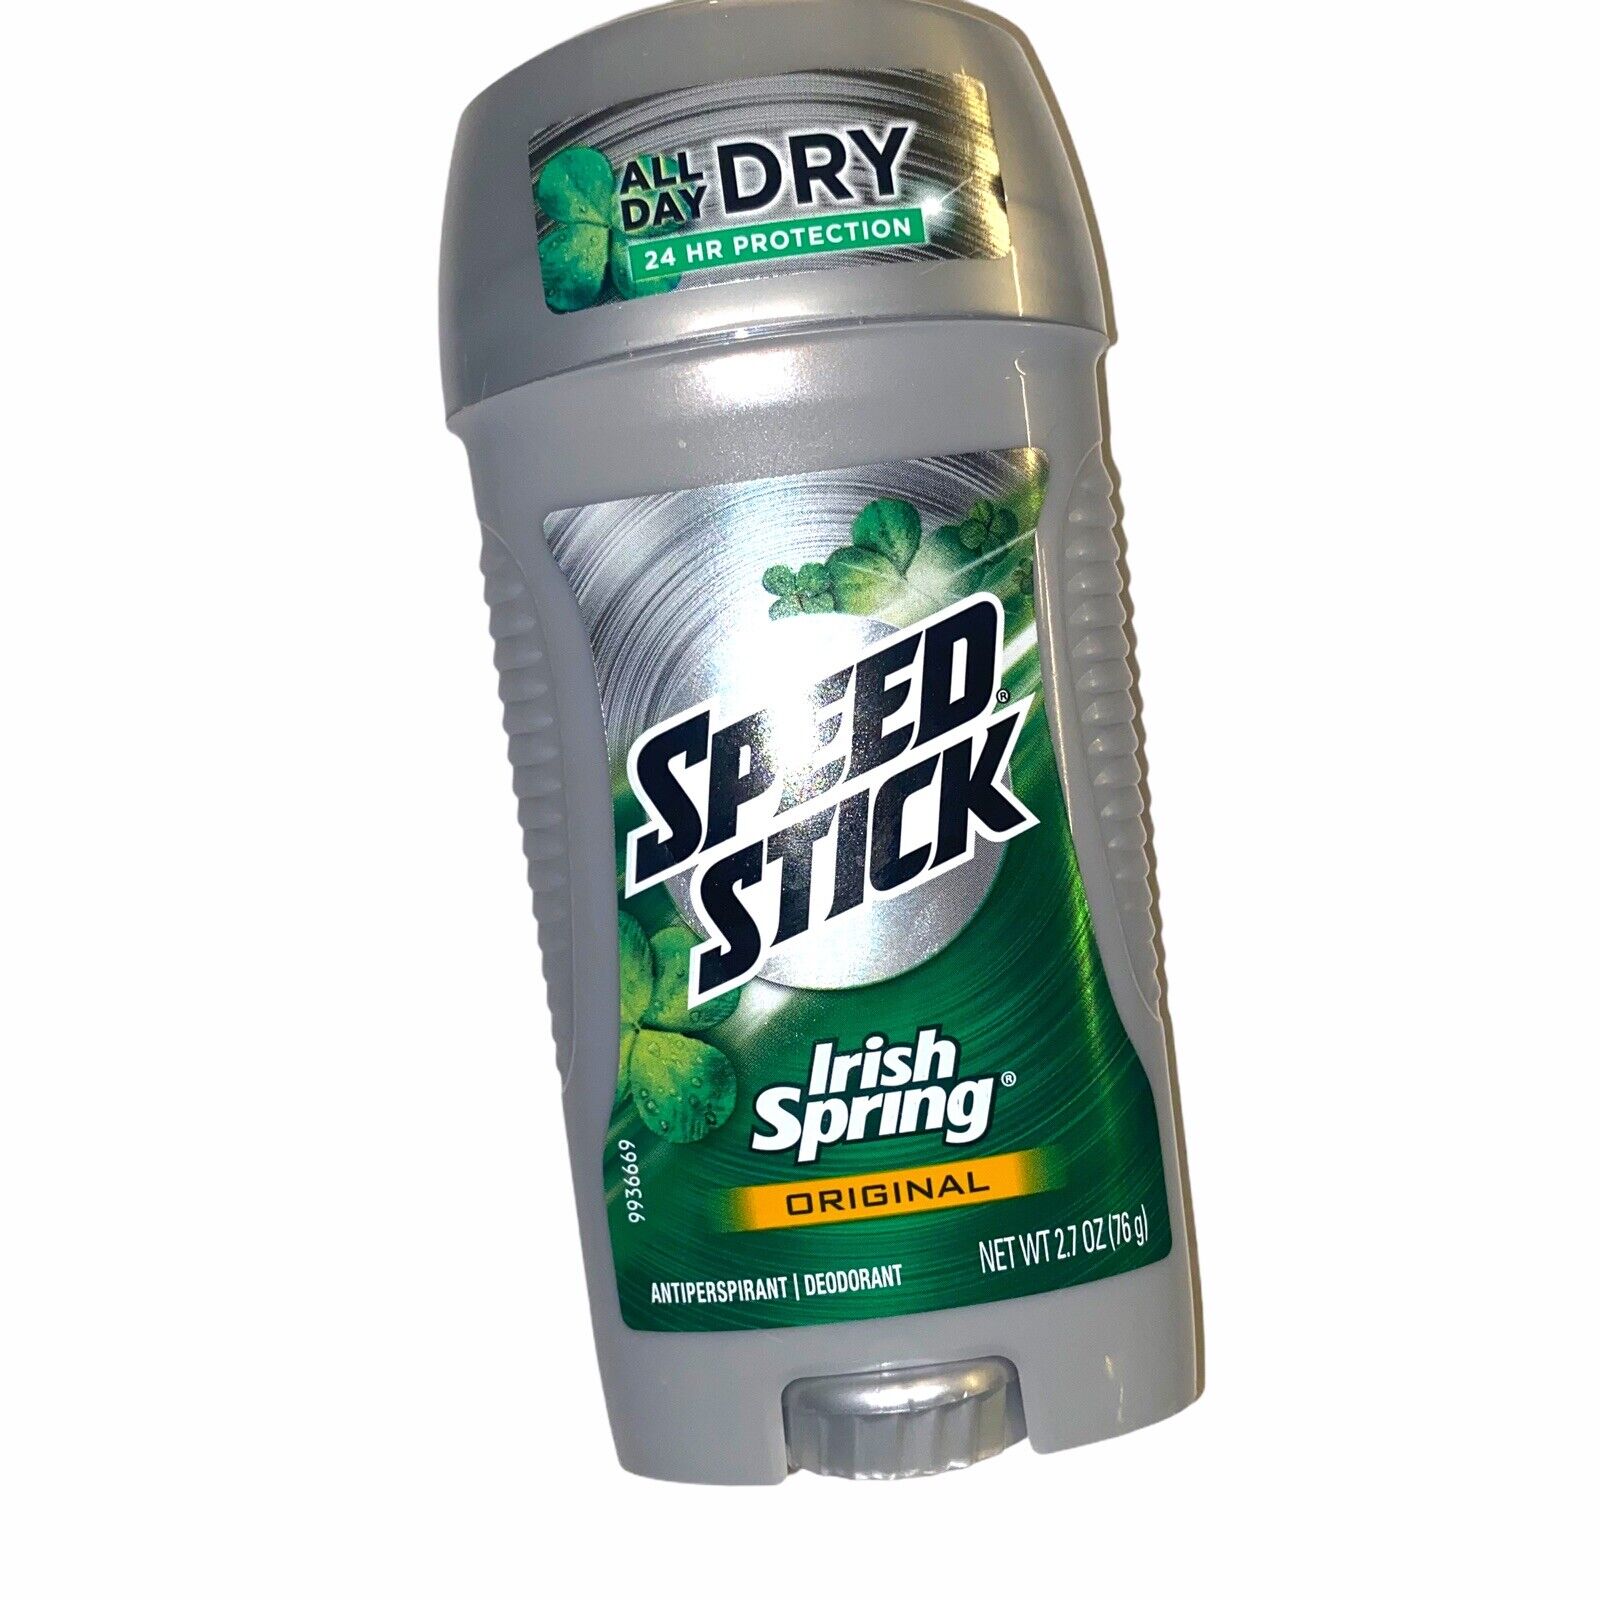 One SPEED STICK Irish Spring Original Deodorant EXP 3/22